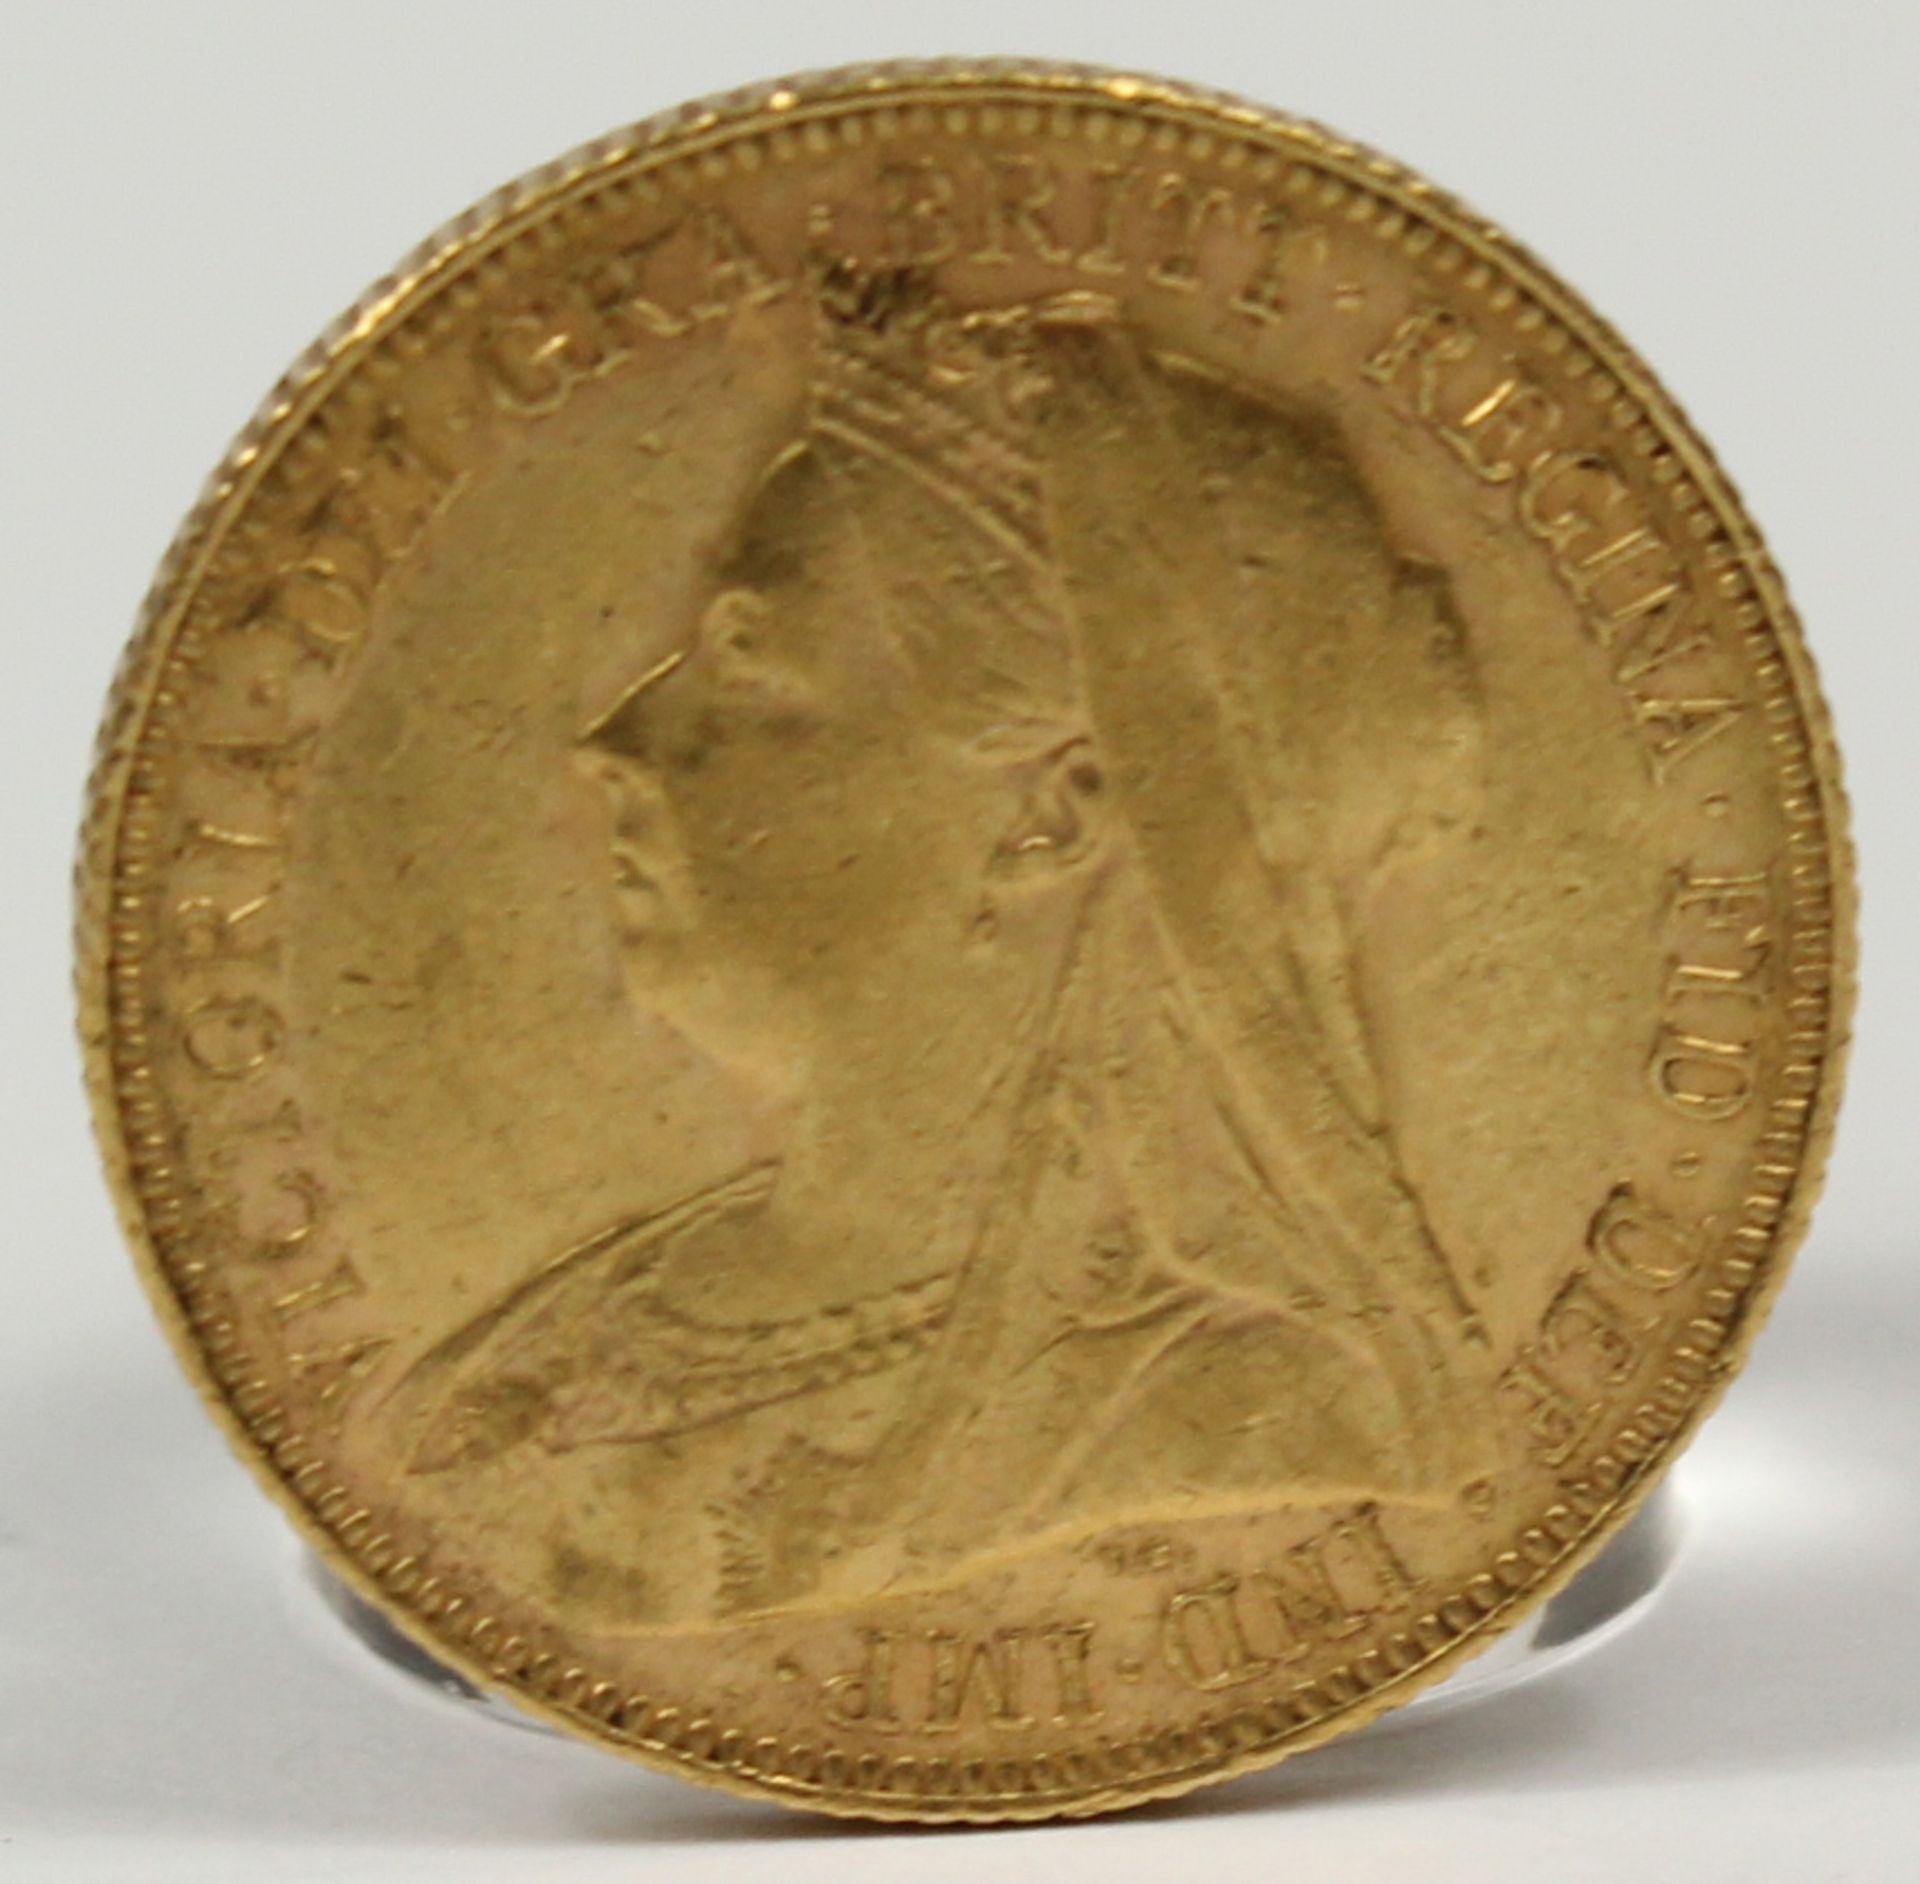 Goldmünze. 1 Sovereign. Großbritannien. Victoria. 1901.